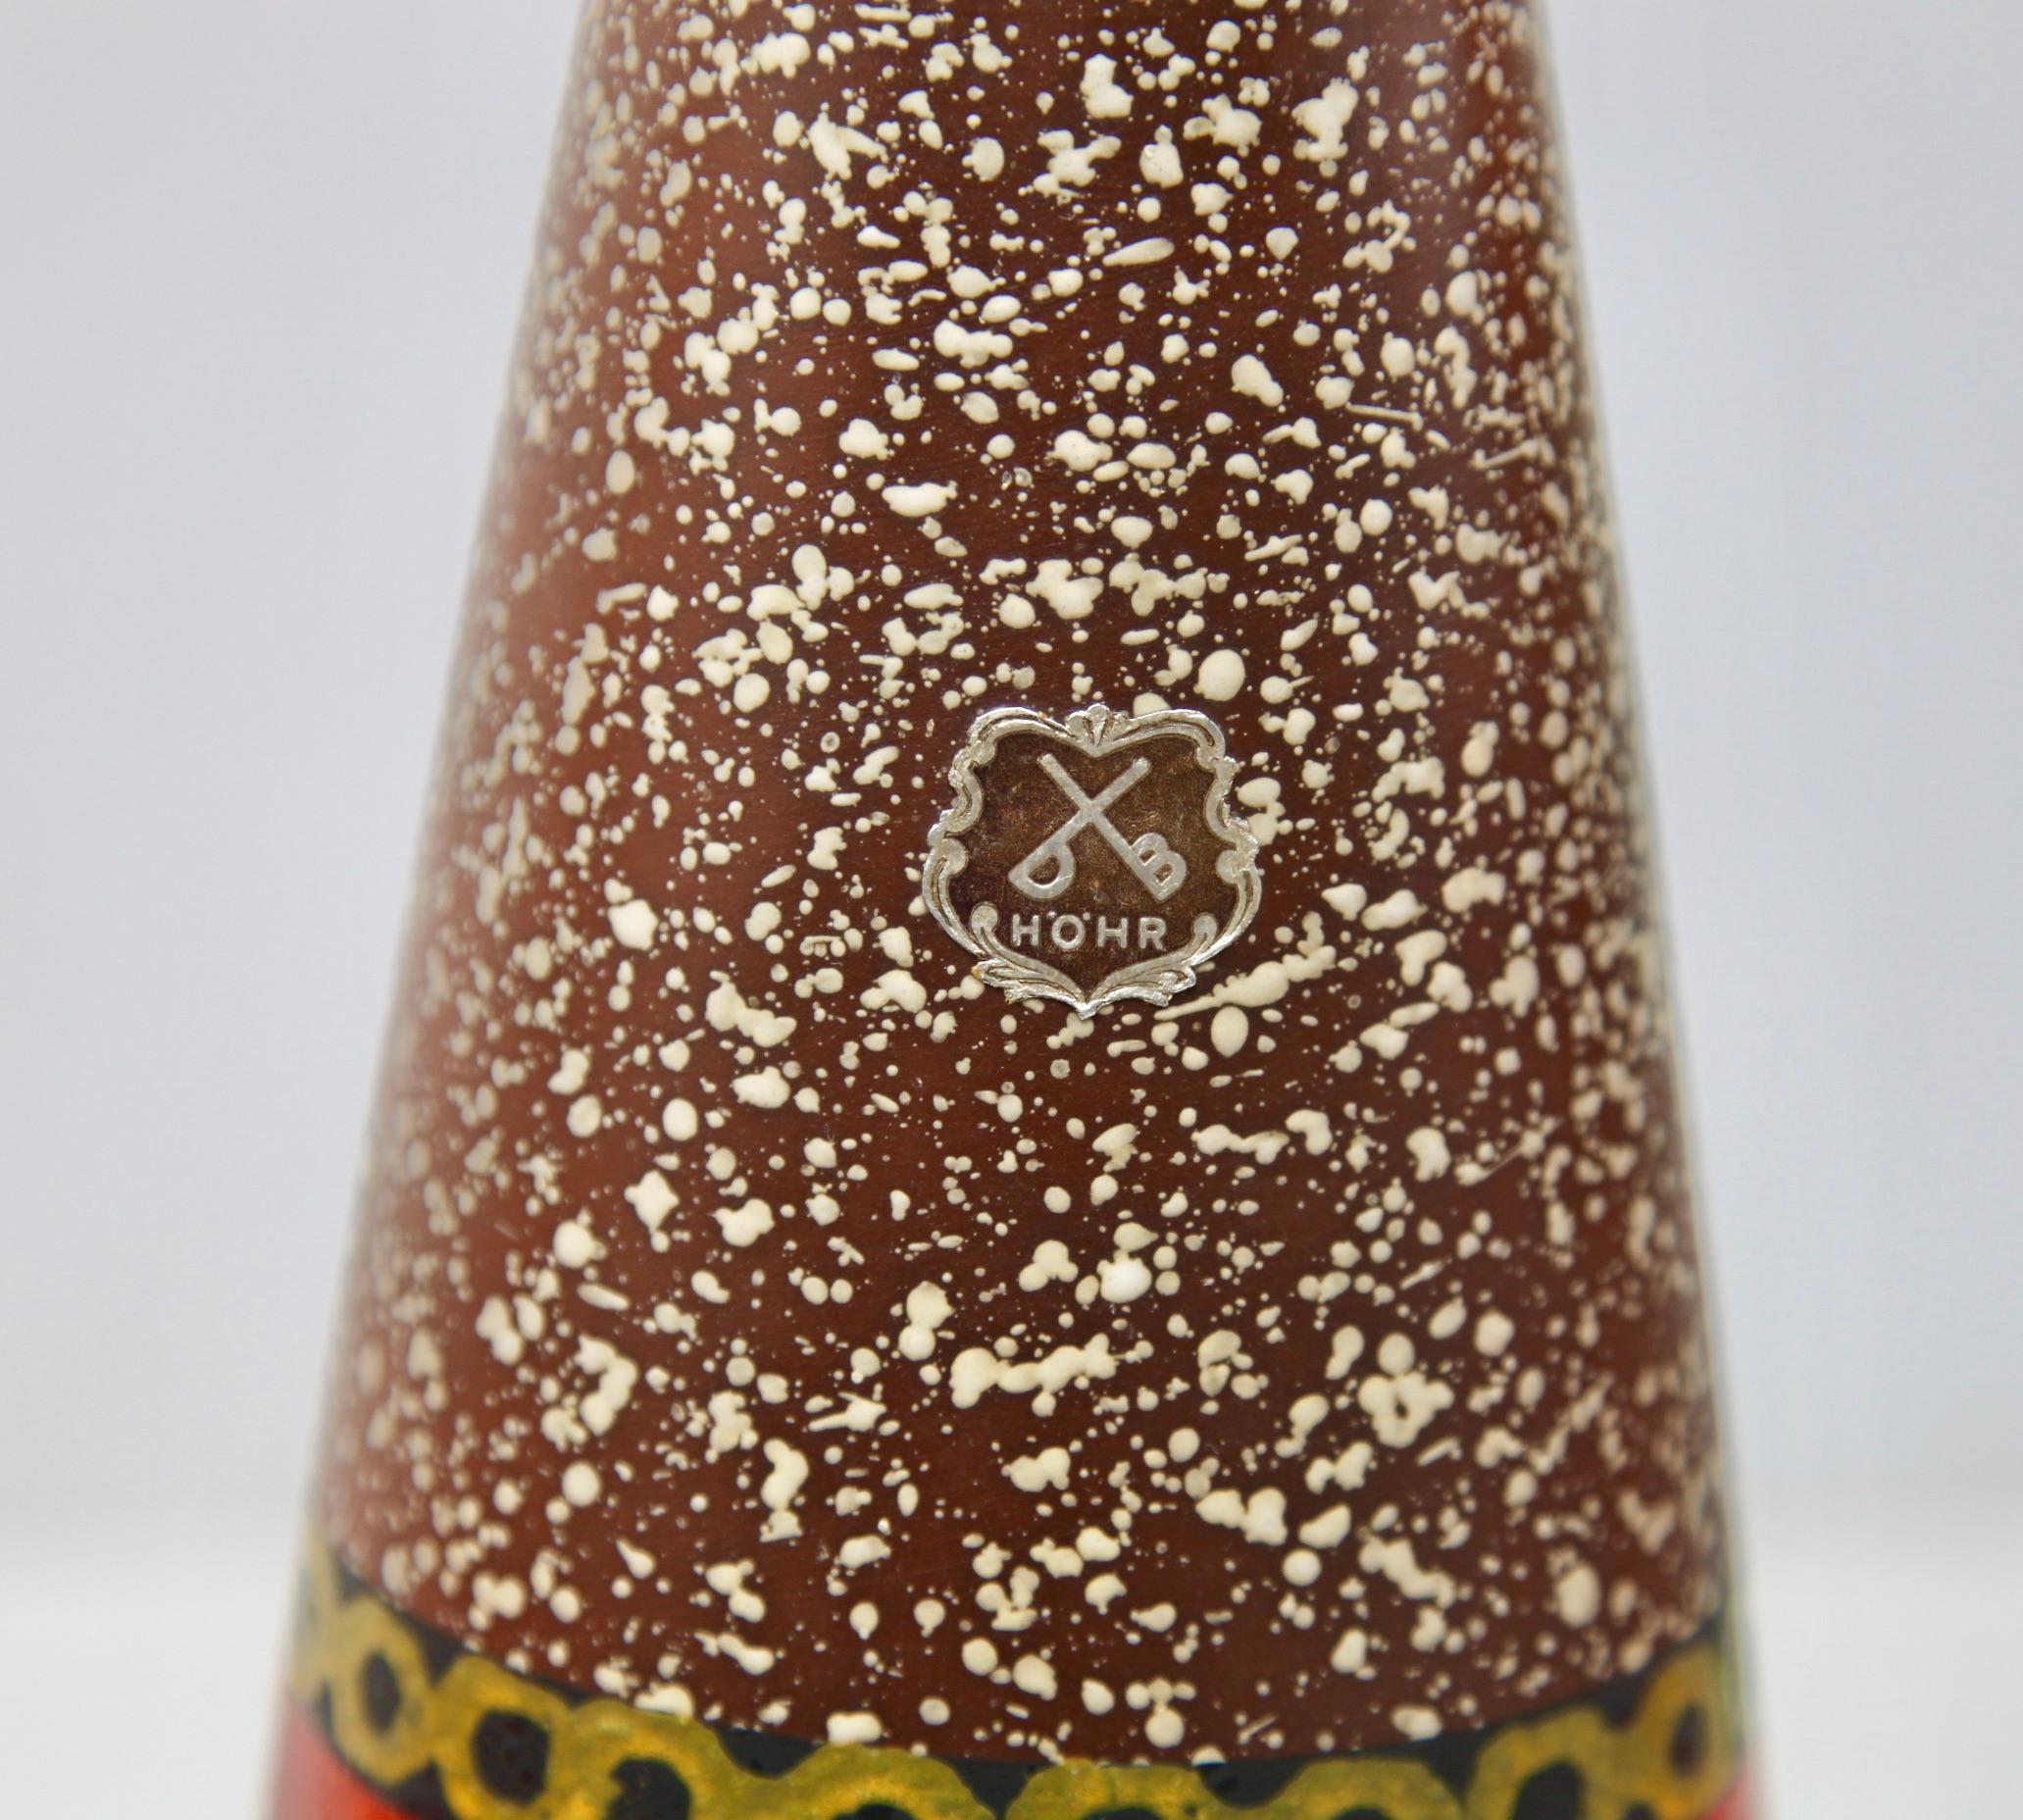 Ce vase vintage original a été produit par HOHR dans les années 1970 en Allemagne. Il est fabriqué en poterie céramique.
Le fond est marqué du numéro de série du vase 1 35 30 Handarbeit
Un design direct et minimaliste de l'ère du design des années